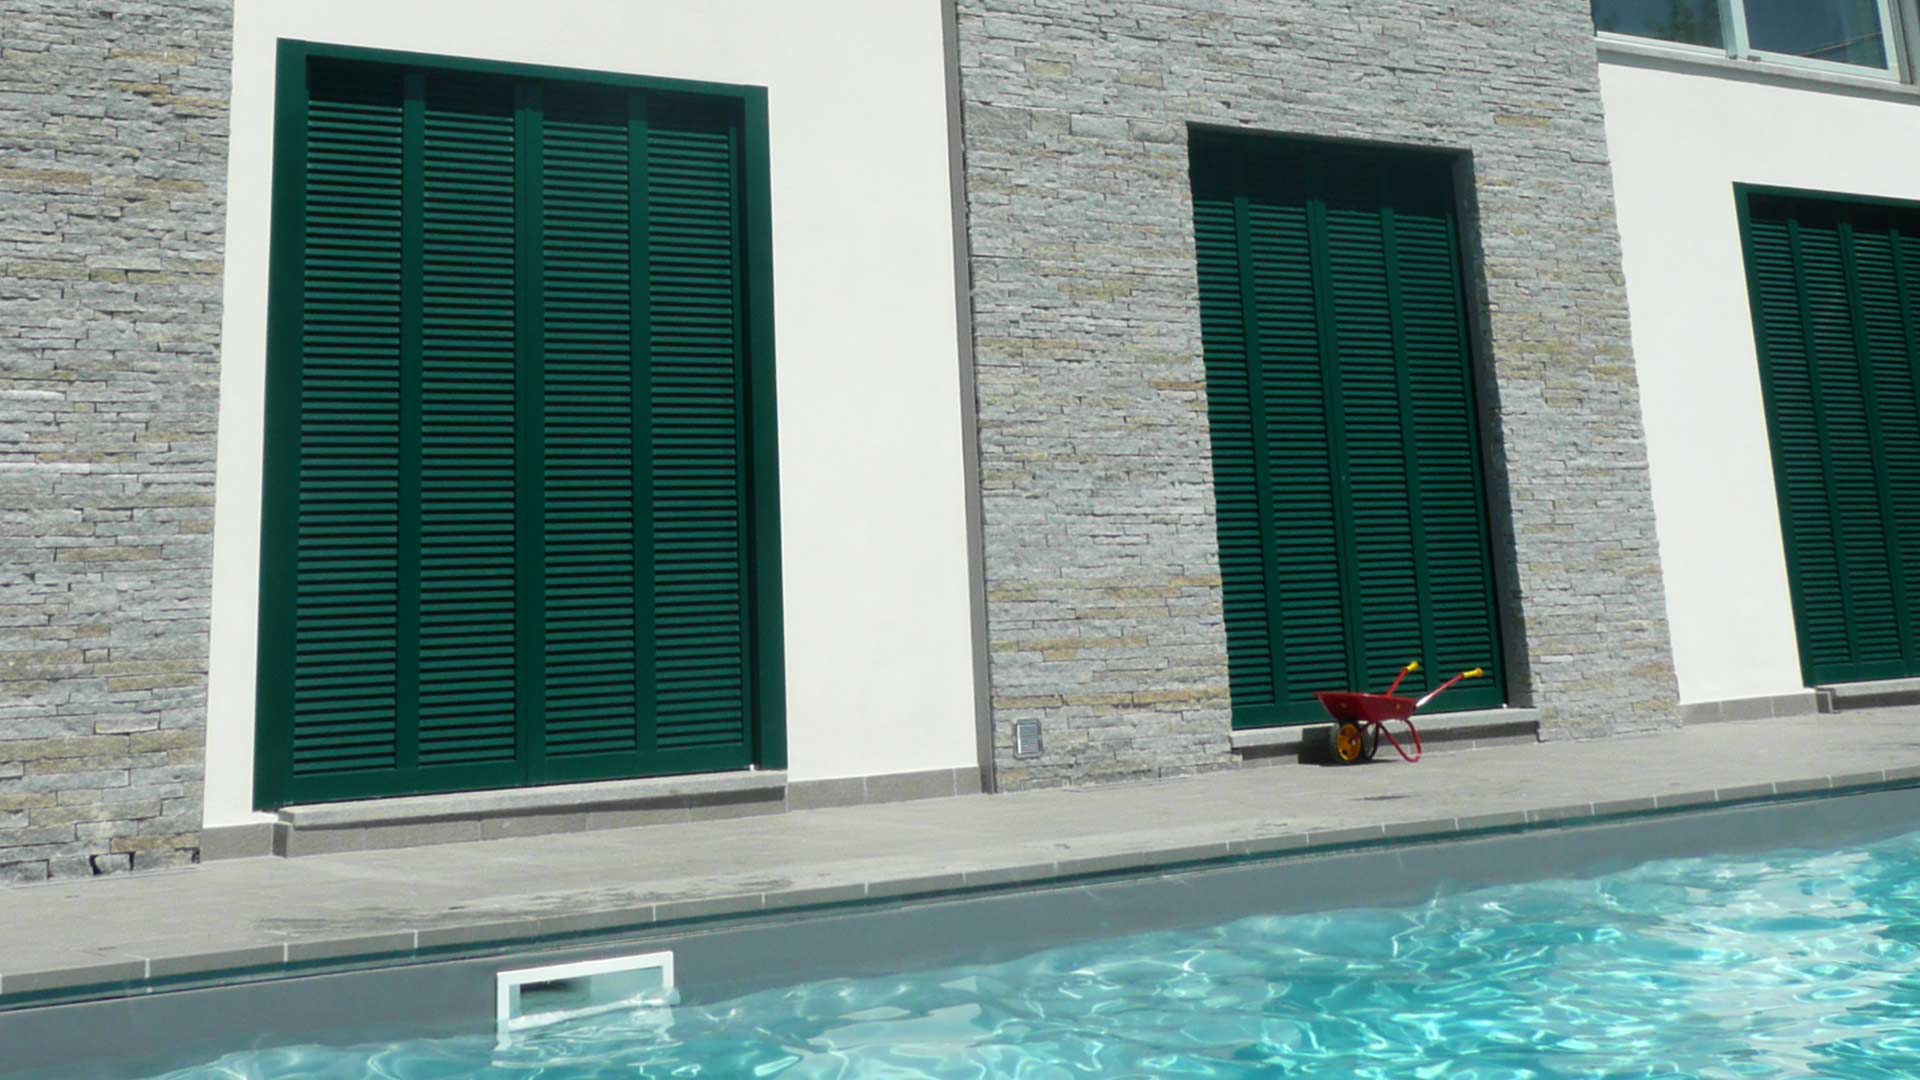 Le realizzazioni di Art Metal Srl: villa di pregio architettonico con piscina a Como.